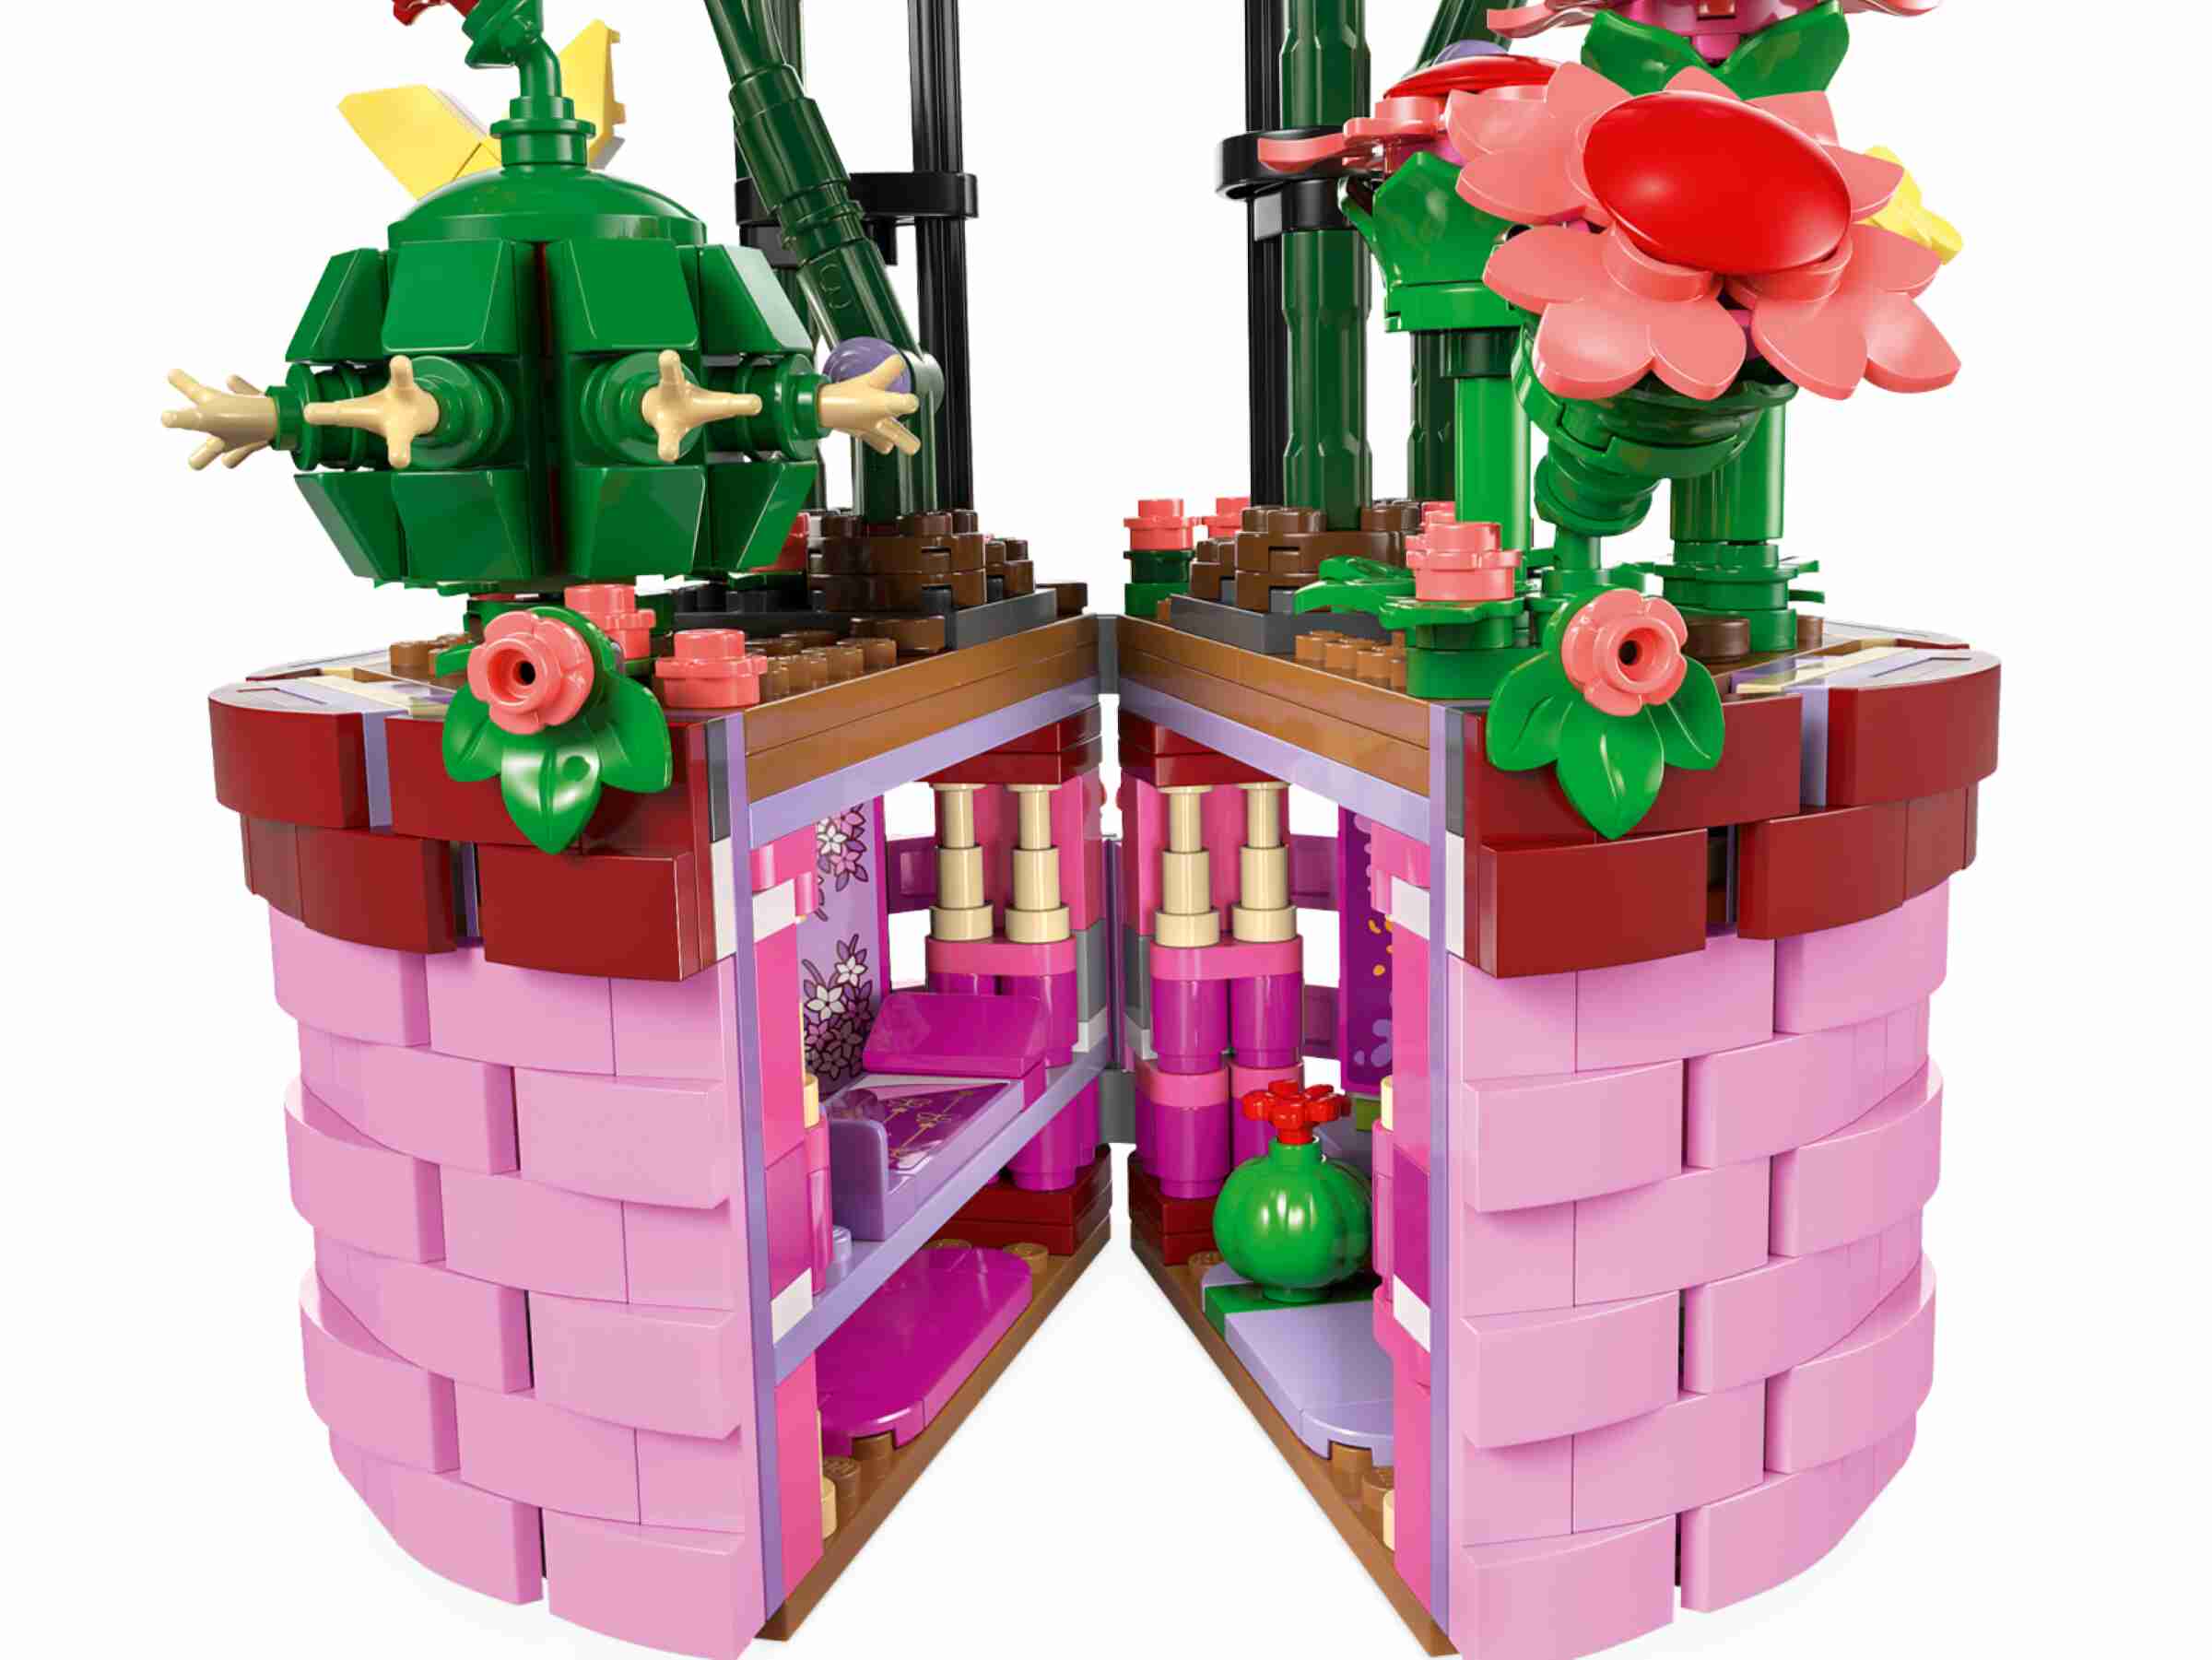 LEGO 43237 Disney Isabelas Blumentopf, Verborgenes Zimmer, 1 Spielfigur